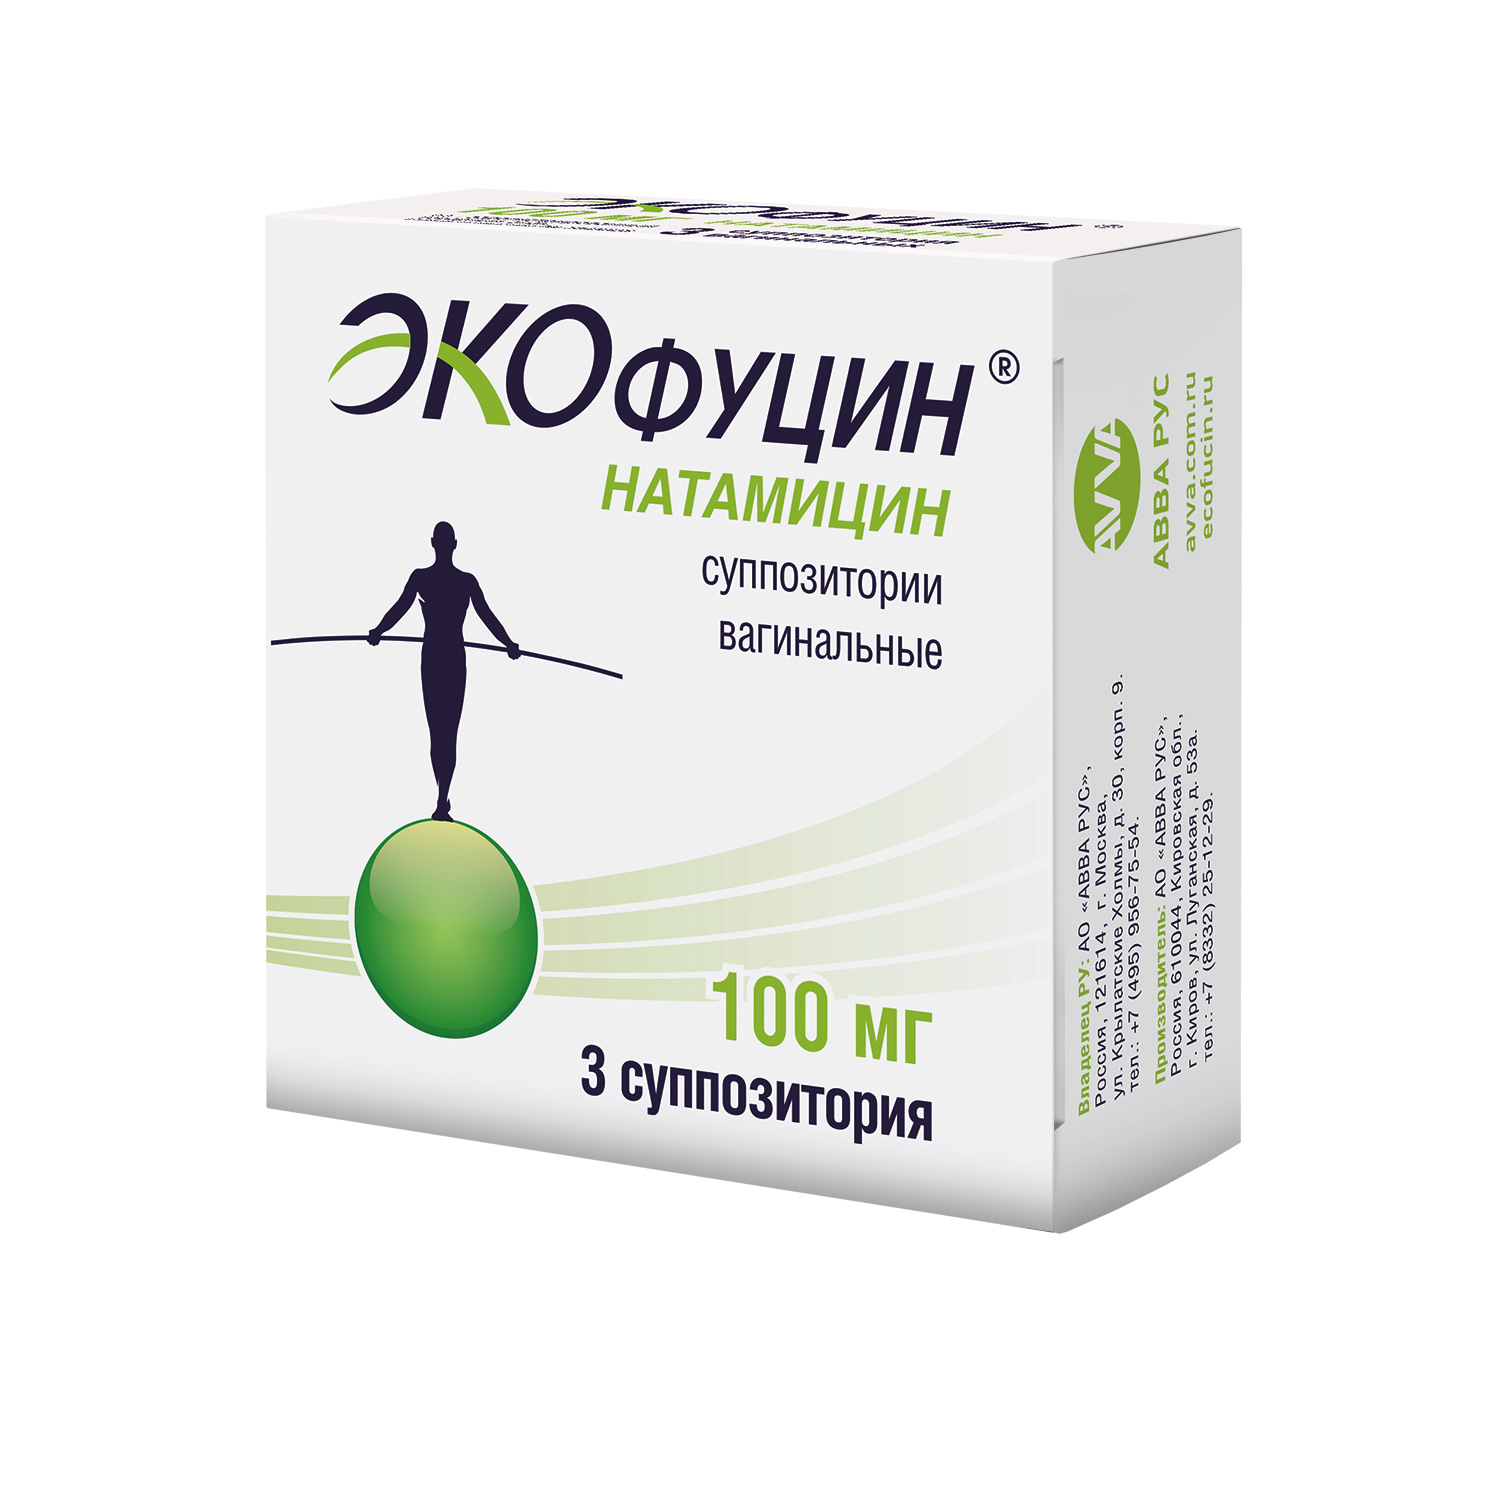 Вагинит - симптомы, признаки, виды и лечение у женщин в Москве в «СМ-Клиника»